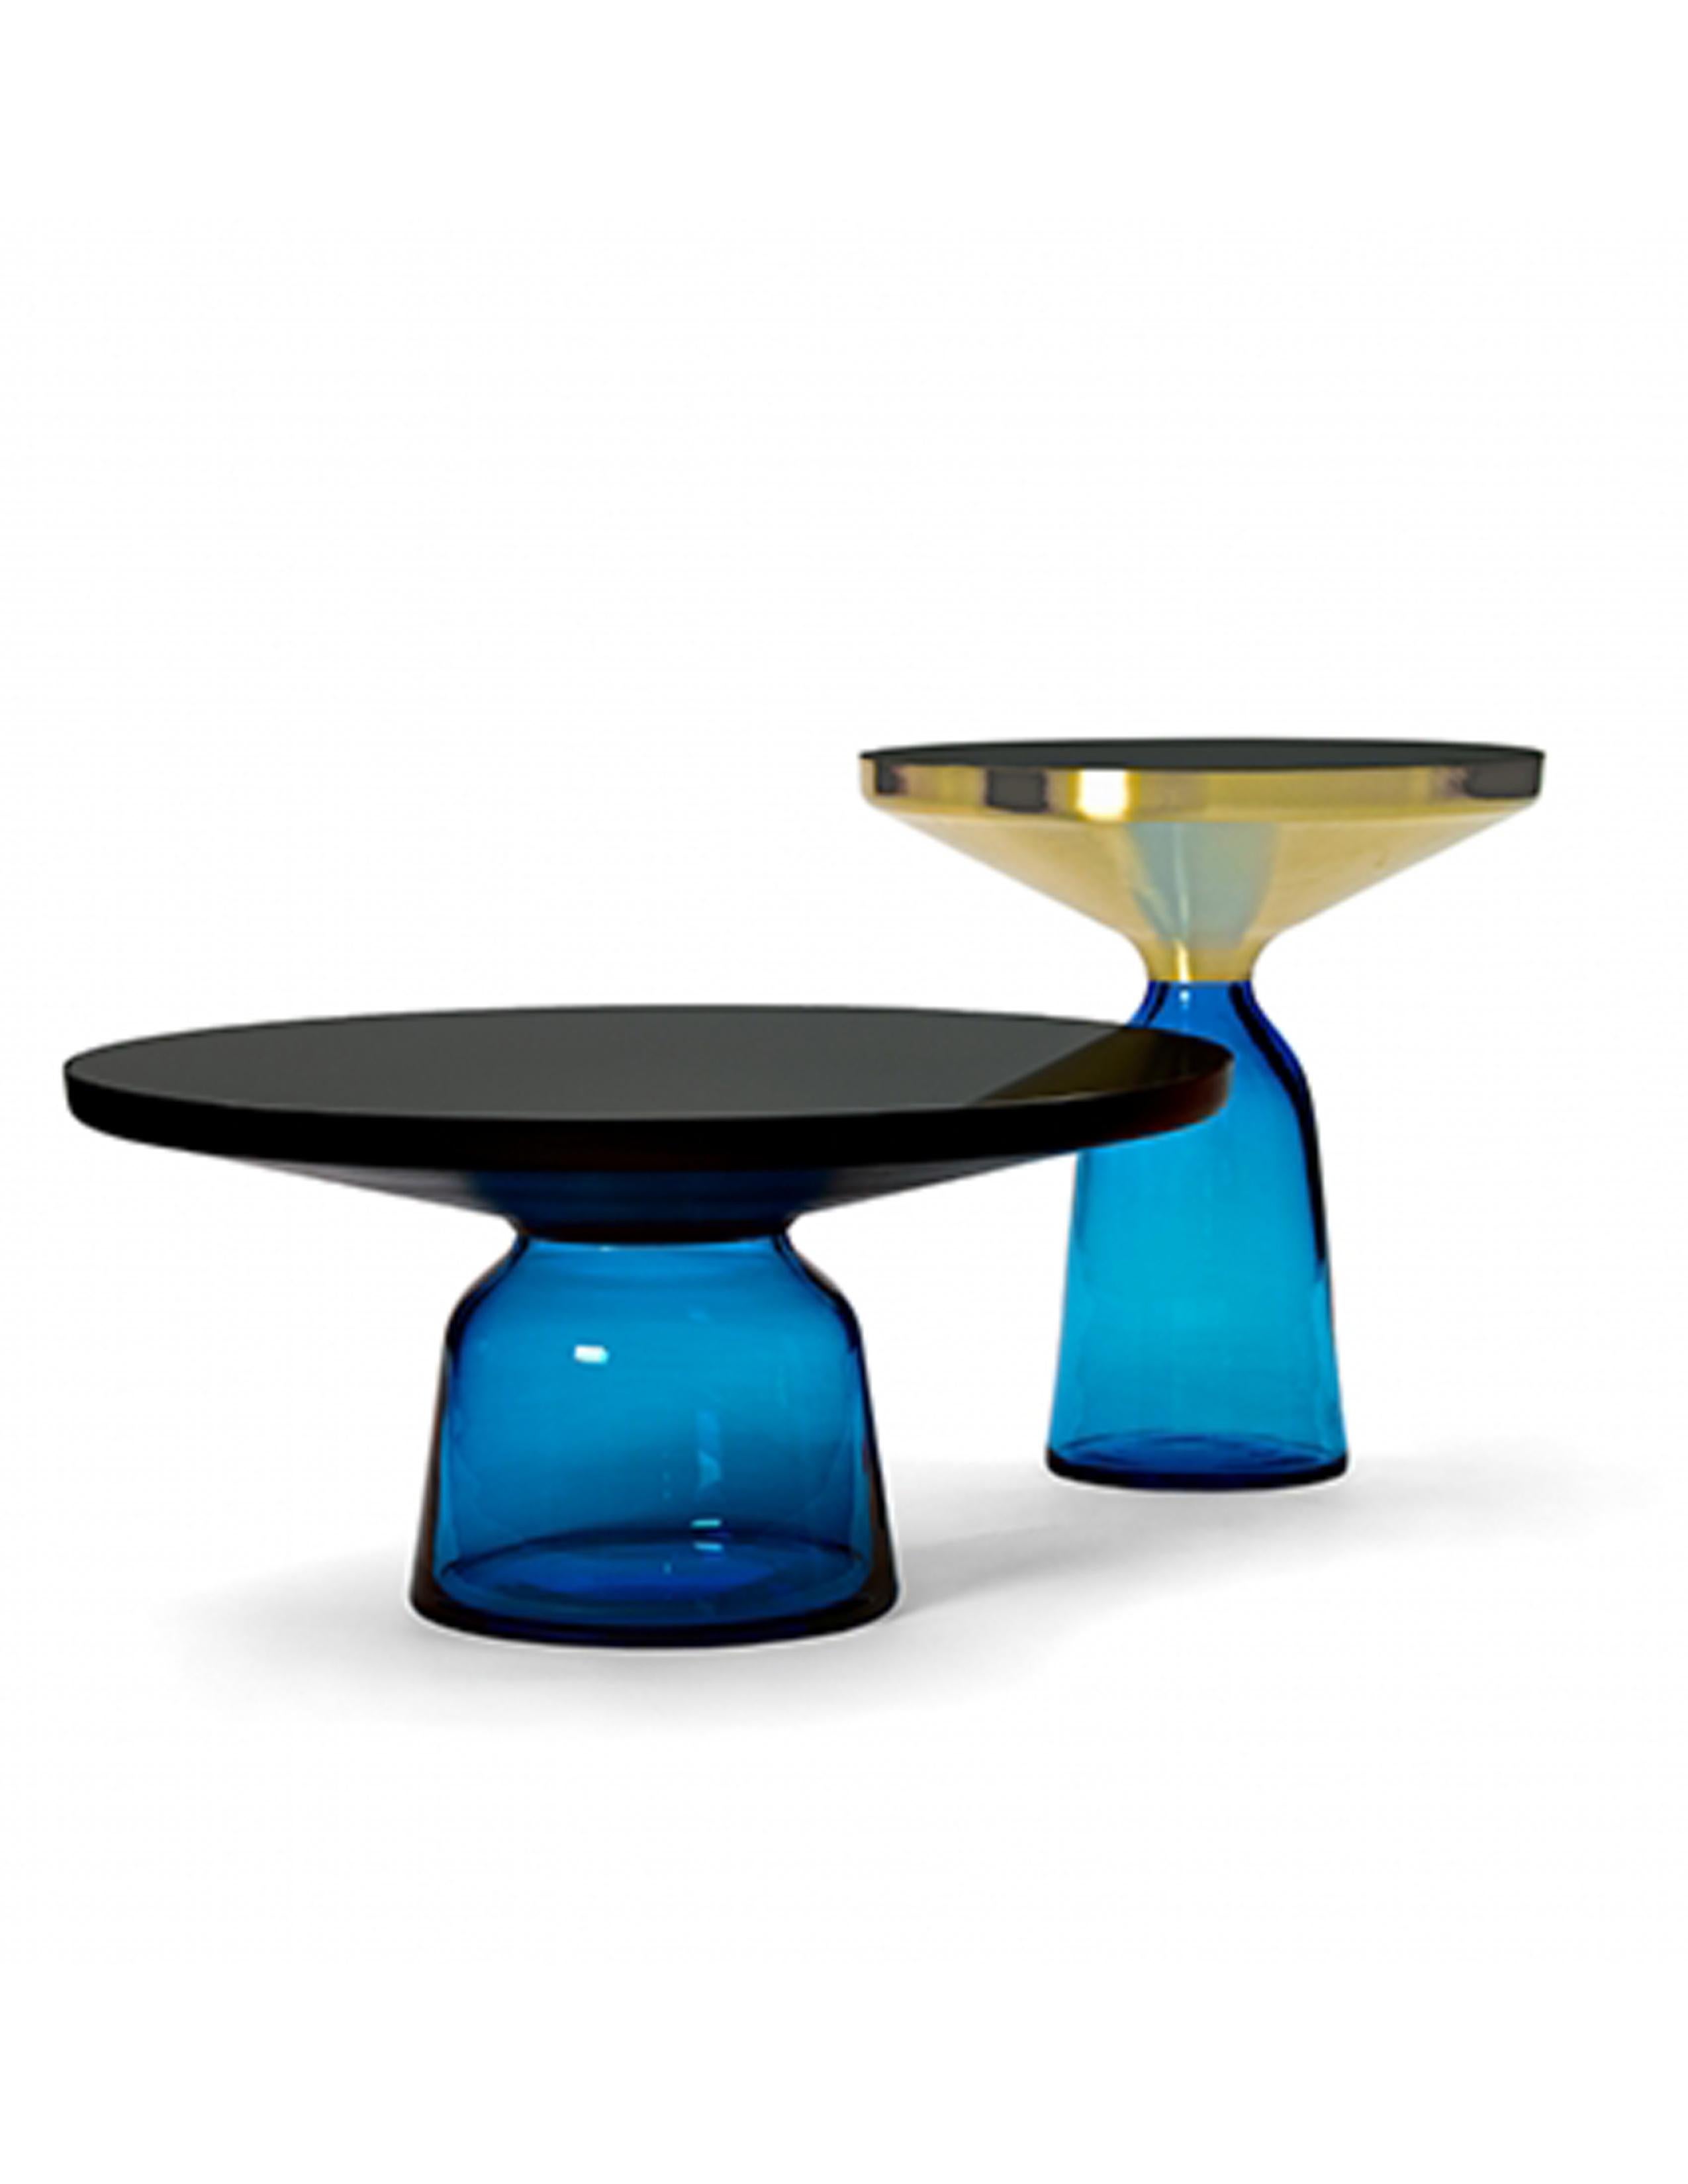 La table Bell de Sebastian Herkner bouleverse nos habitudes de perception en utilisant le matériau léger et fragile qu'est le verre comme base pour un plateau en métal qui semble flotter au-dessus. Soufflée à la main de manière traditionnelle à